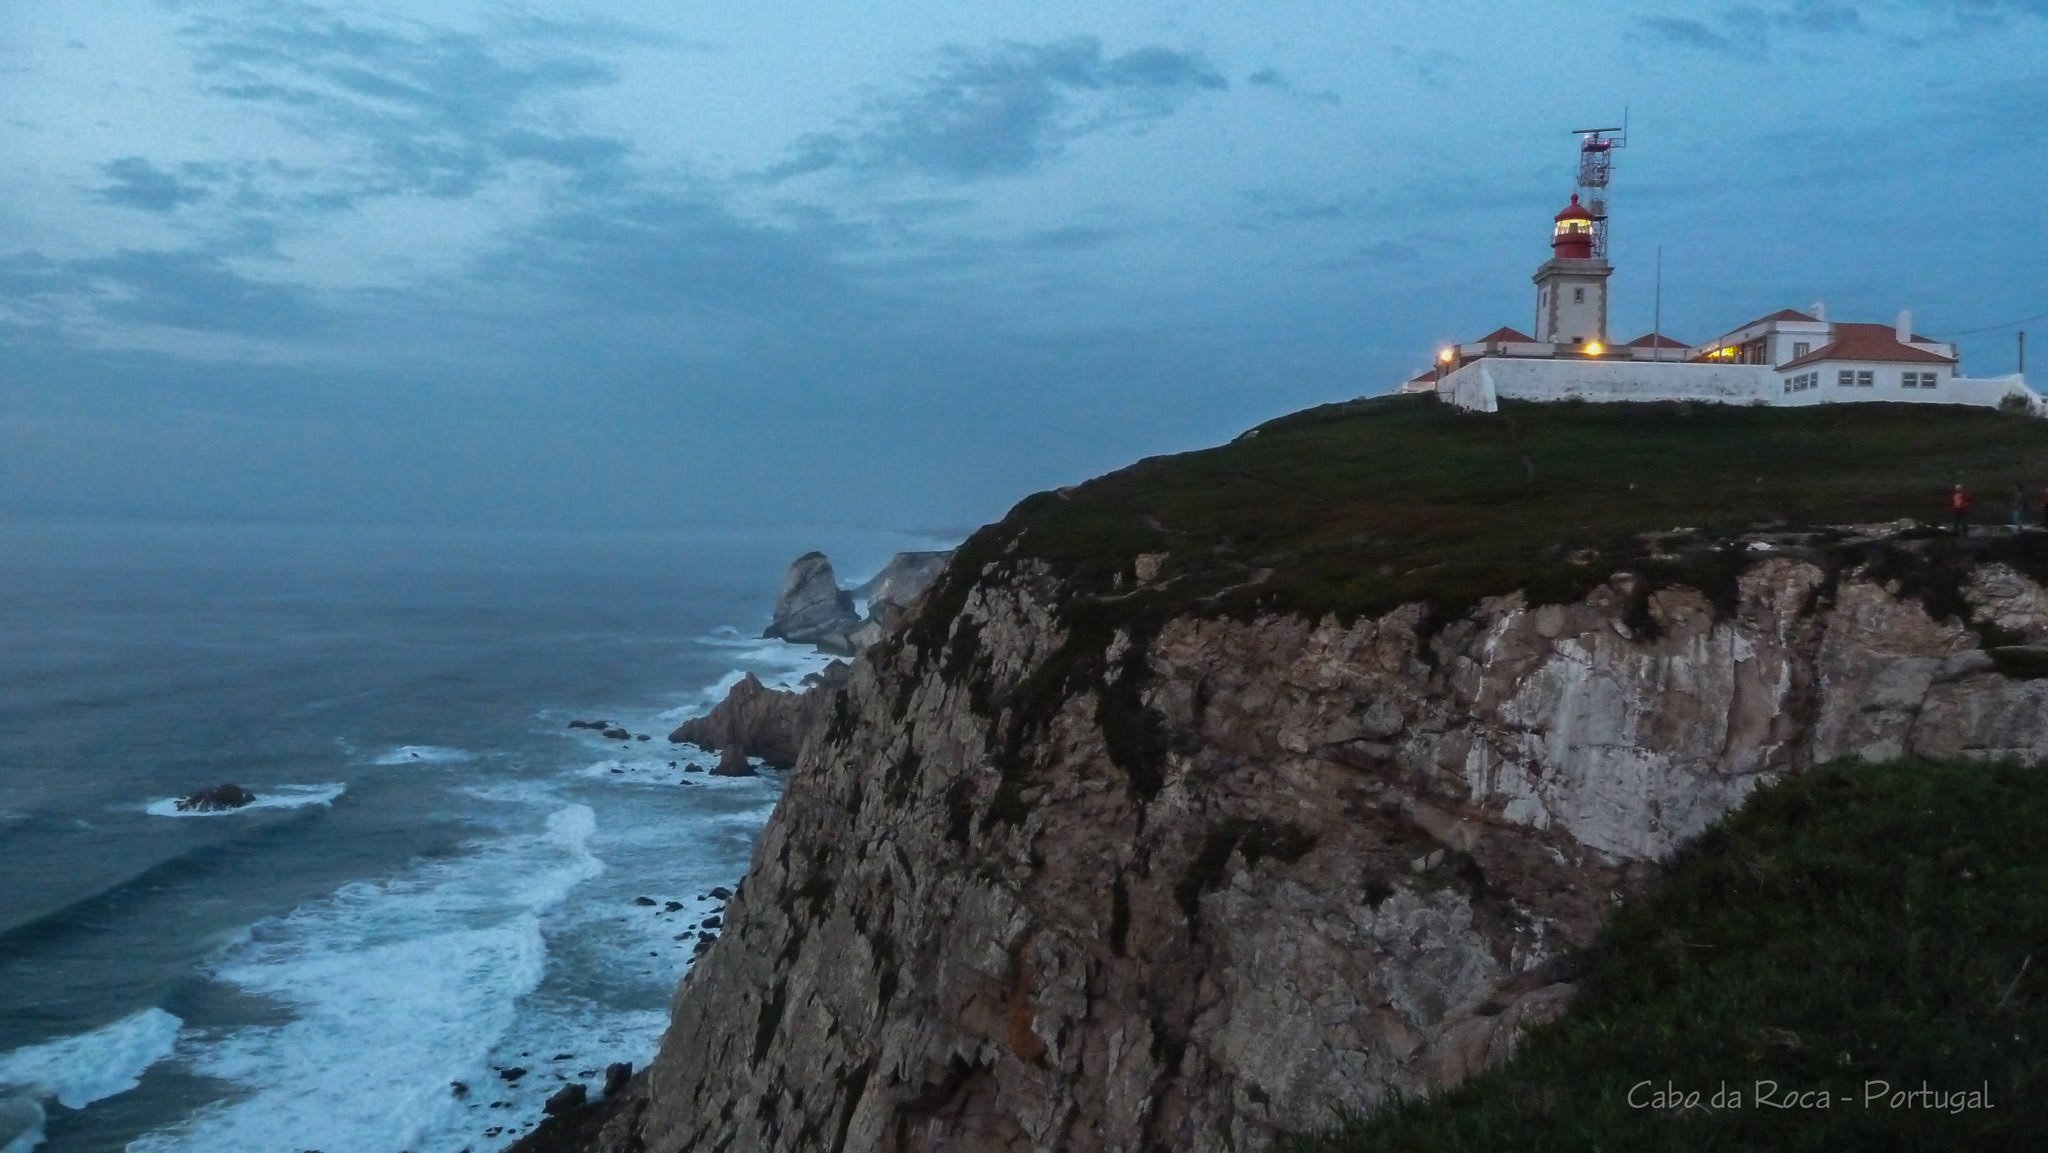 The Cabo da Roca lighthouse - Atlantic Ocean